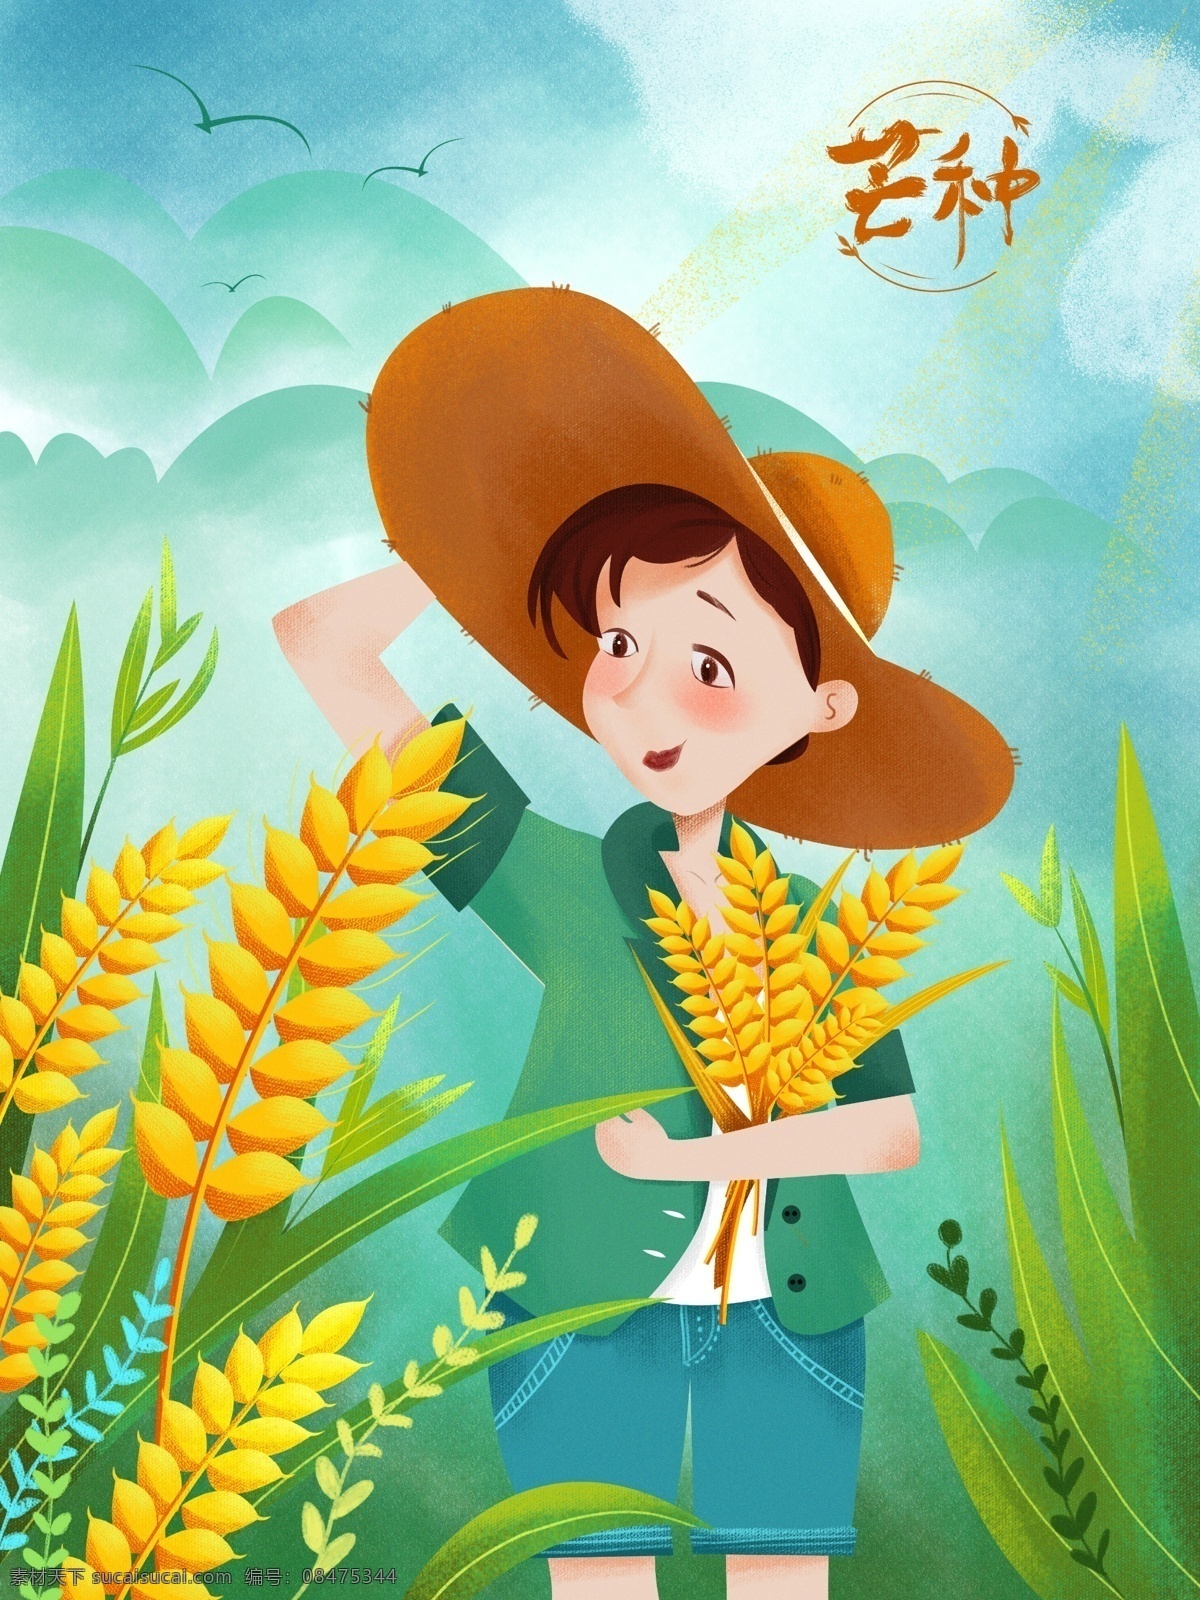 二十四节气 芒种 原创 插画 麦子 收获 戴草帽的男孩 远山 场景 夏天